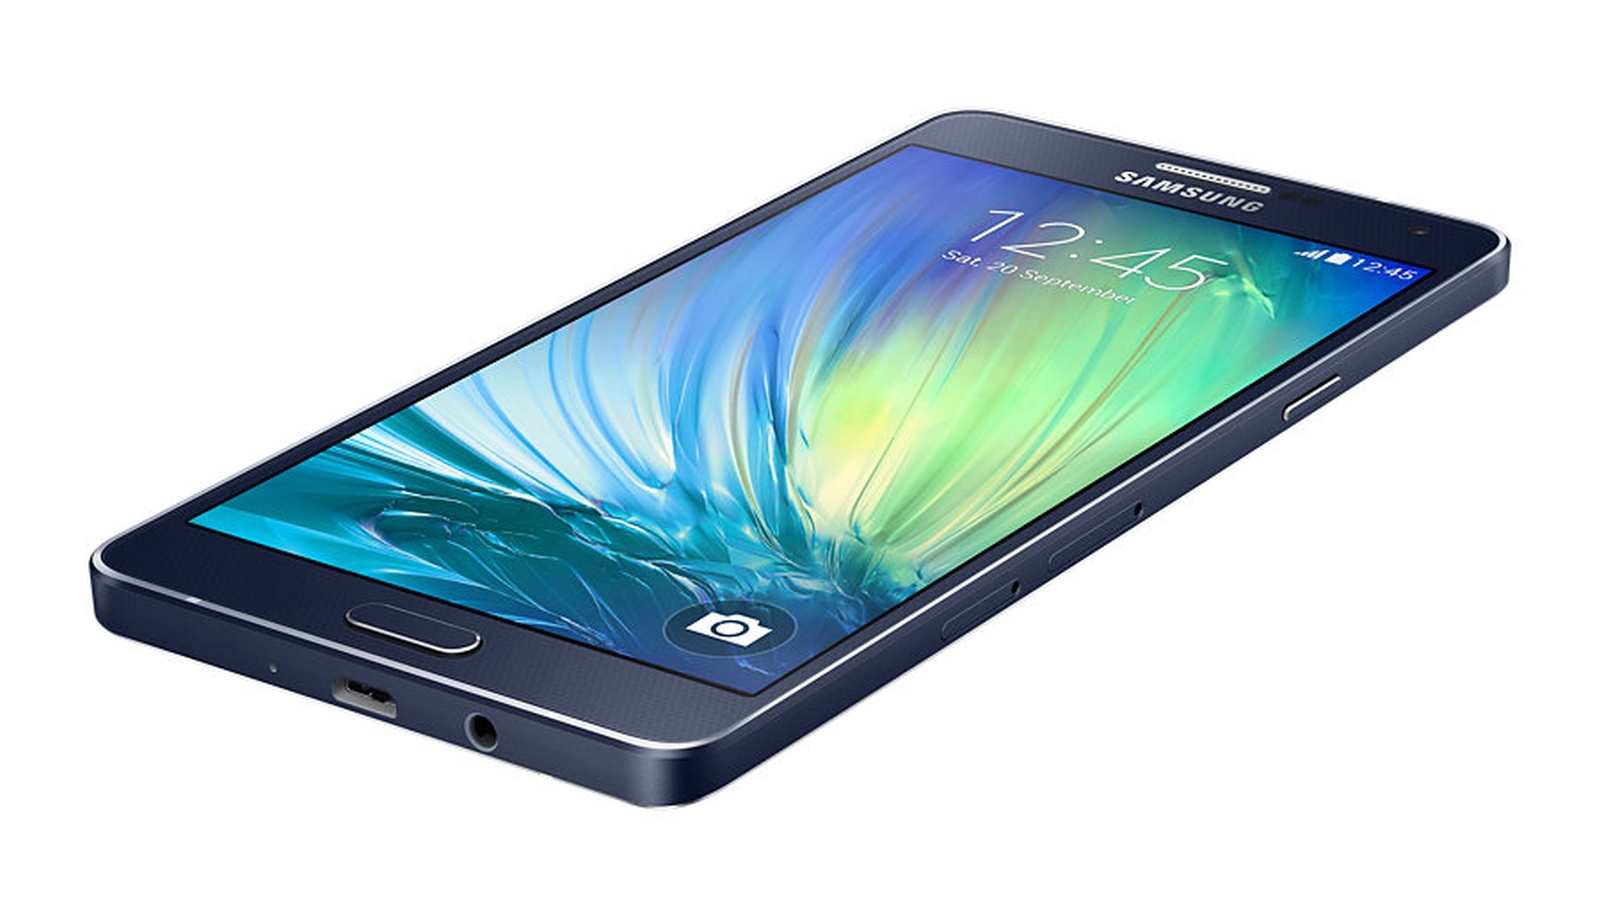 Samsung Galaxy Sm A300f Купить